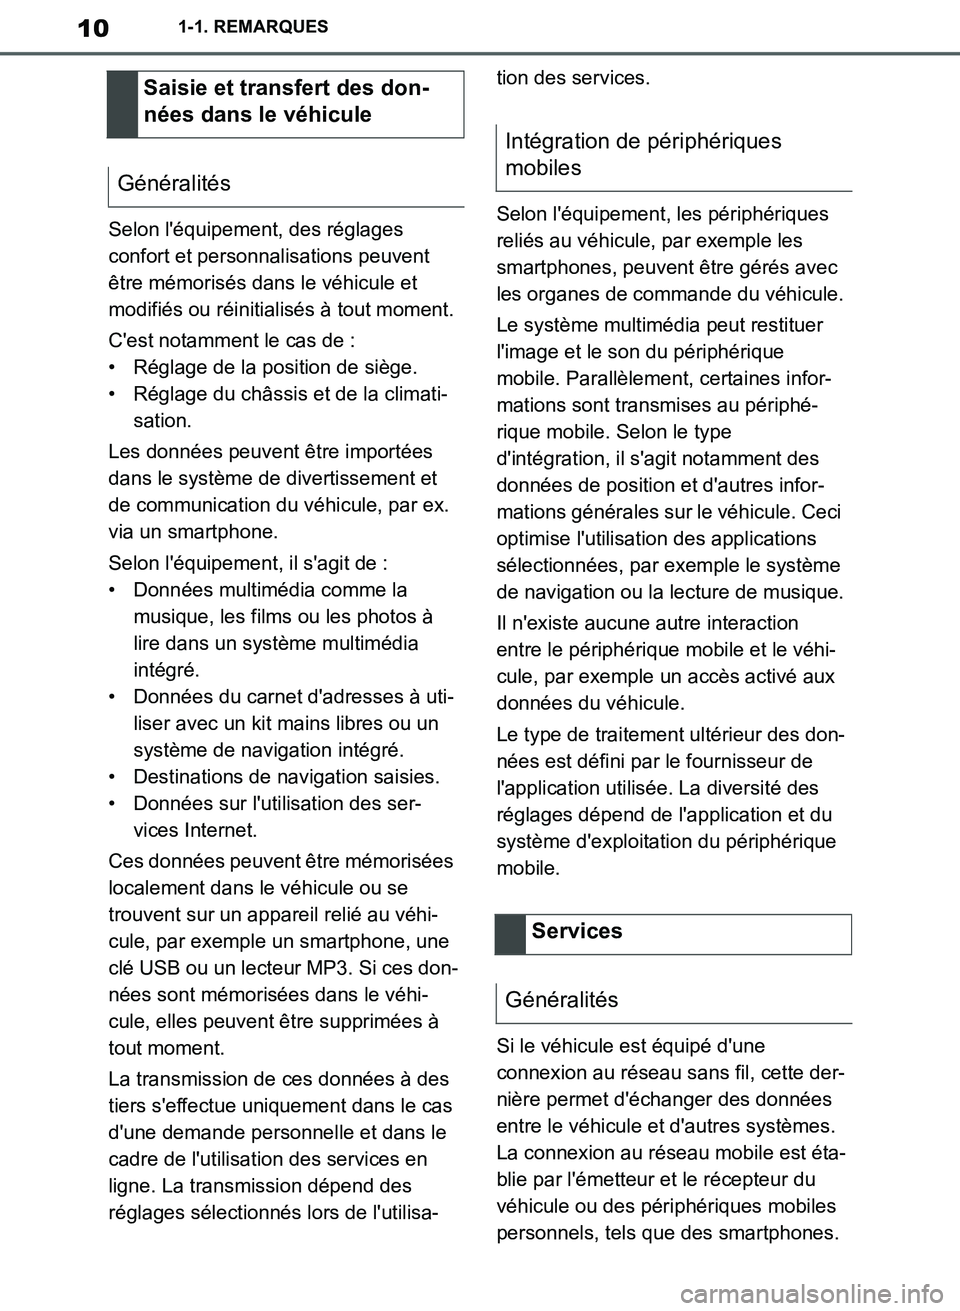 TOYOTA SUPRA 2019  Notices Demploi (in French) 10
Supra Owners Manual_EK
1-1. REMARQUES
Selon léquipement, des réglages 
confort et personnalisations peuvent 
être mémorisés dans le véhicule et 
modifiés ou réinitialisés à tout moment.